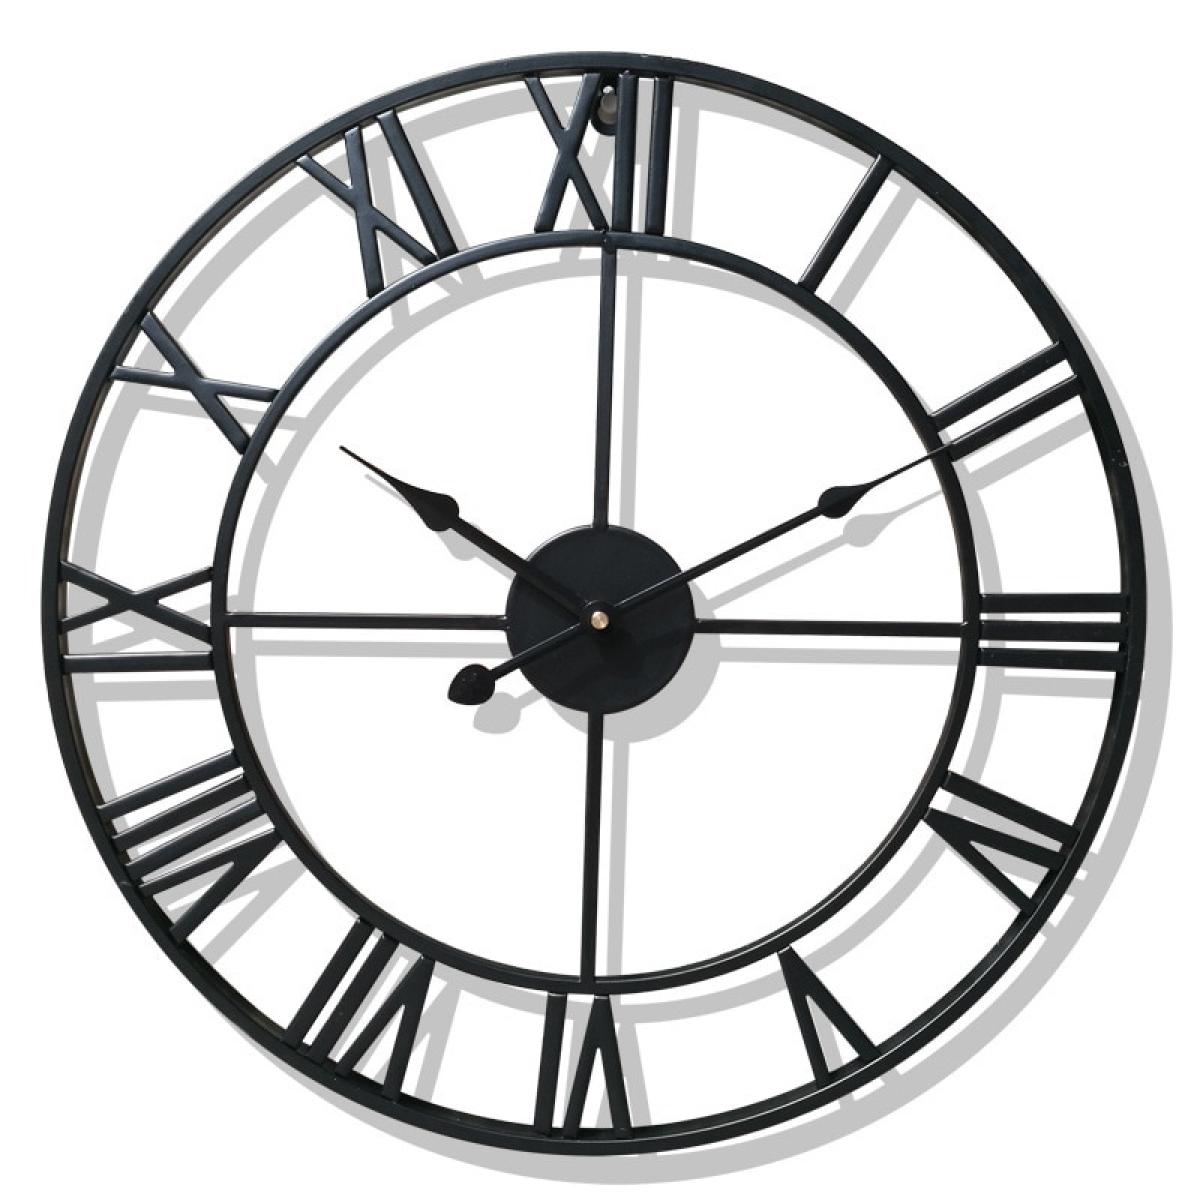 Horloges, pendules Universal Horloge murale en métal nordique 40 chiffres romains Vintage Fer Visage rond Or Noir Grande horloge de jardin extérieure Décoration de la maison | Horloge murale